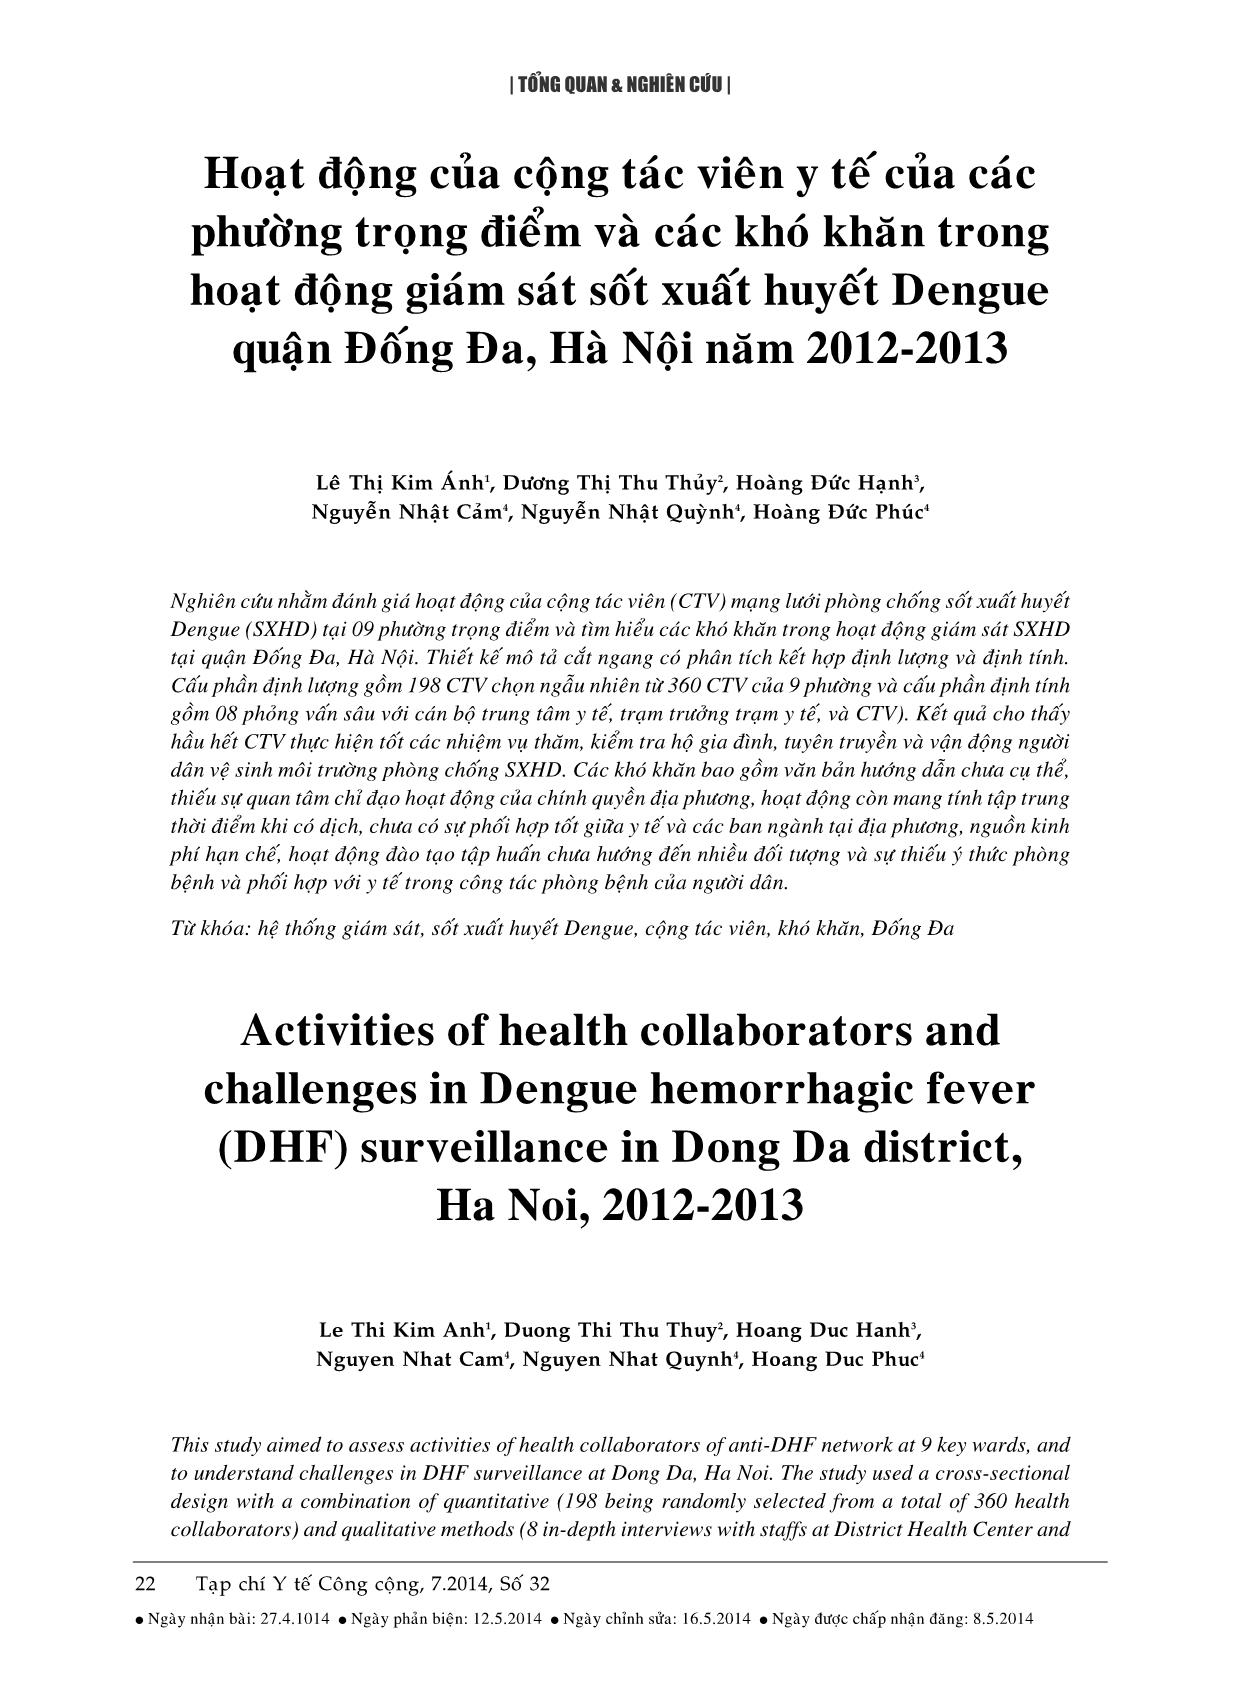 Hoạt động của cộng tác viên y tế của các phường trọng điểm và các khó khăn trong hoạt động giám sát sốt xuất huyết Dengue quận Đống Đa, Hà Nội năm 2012-2013 trang 1